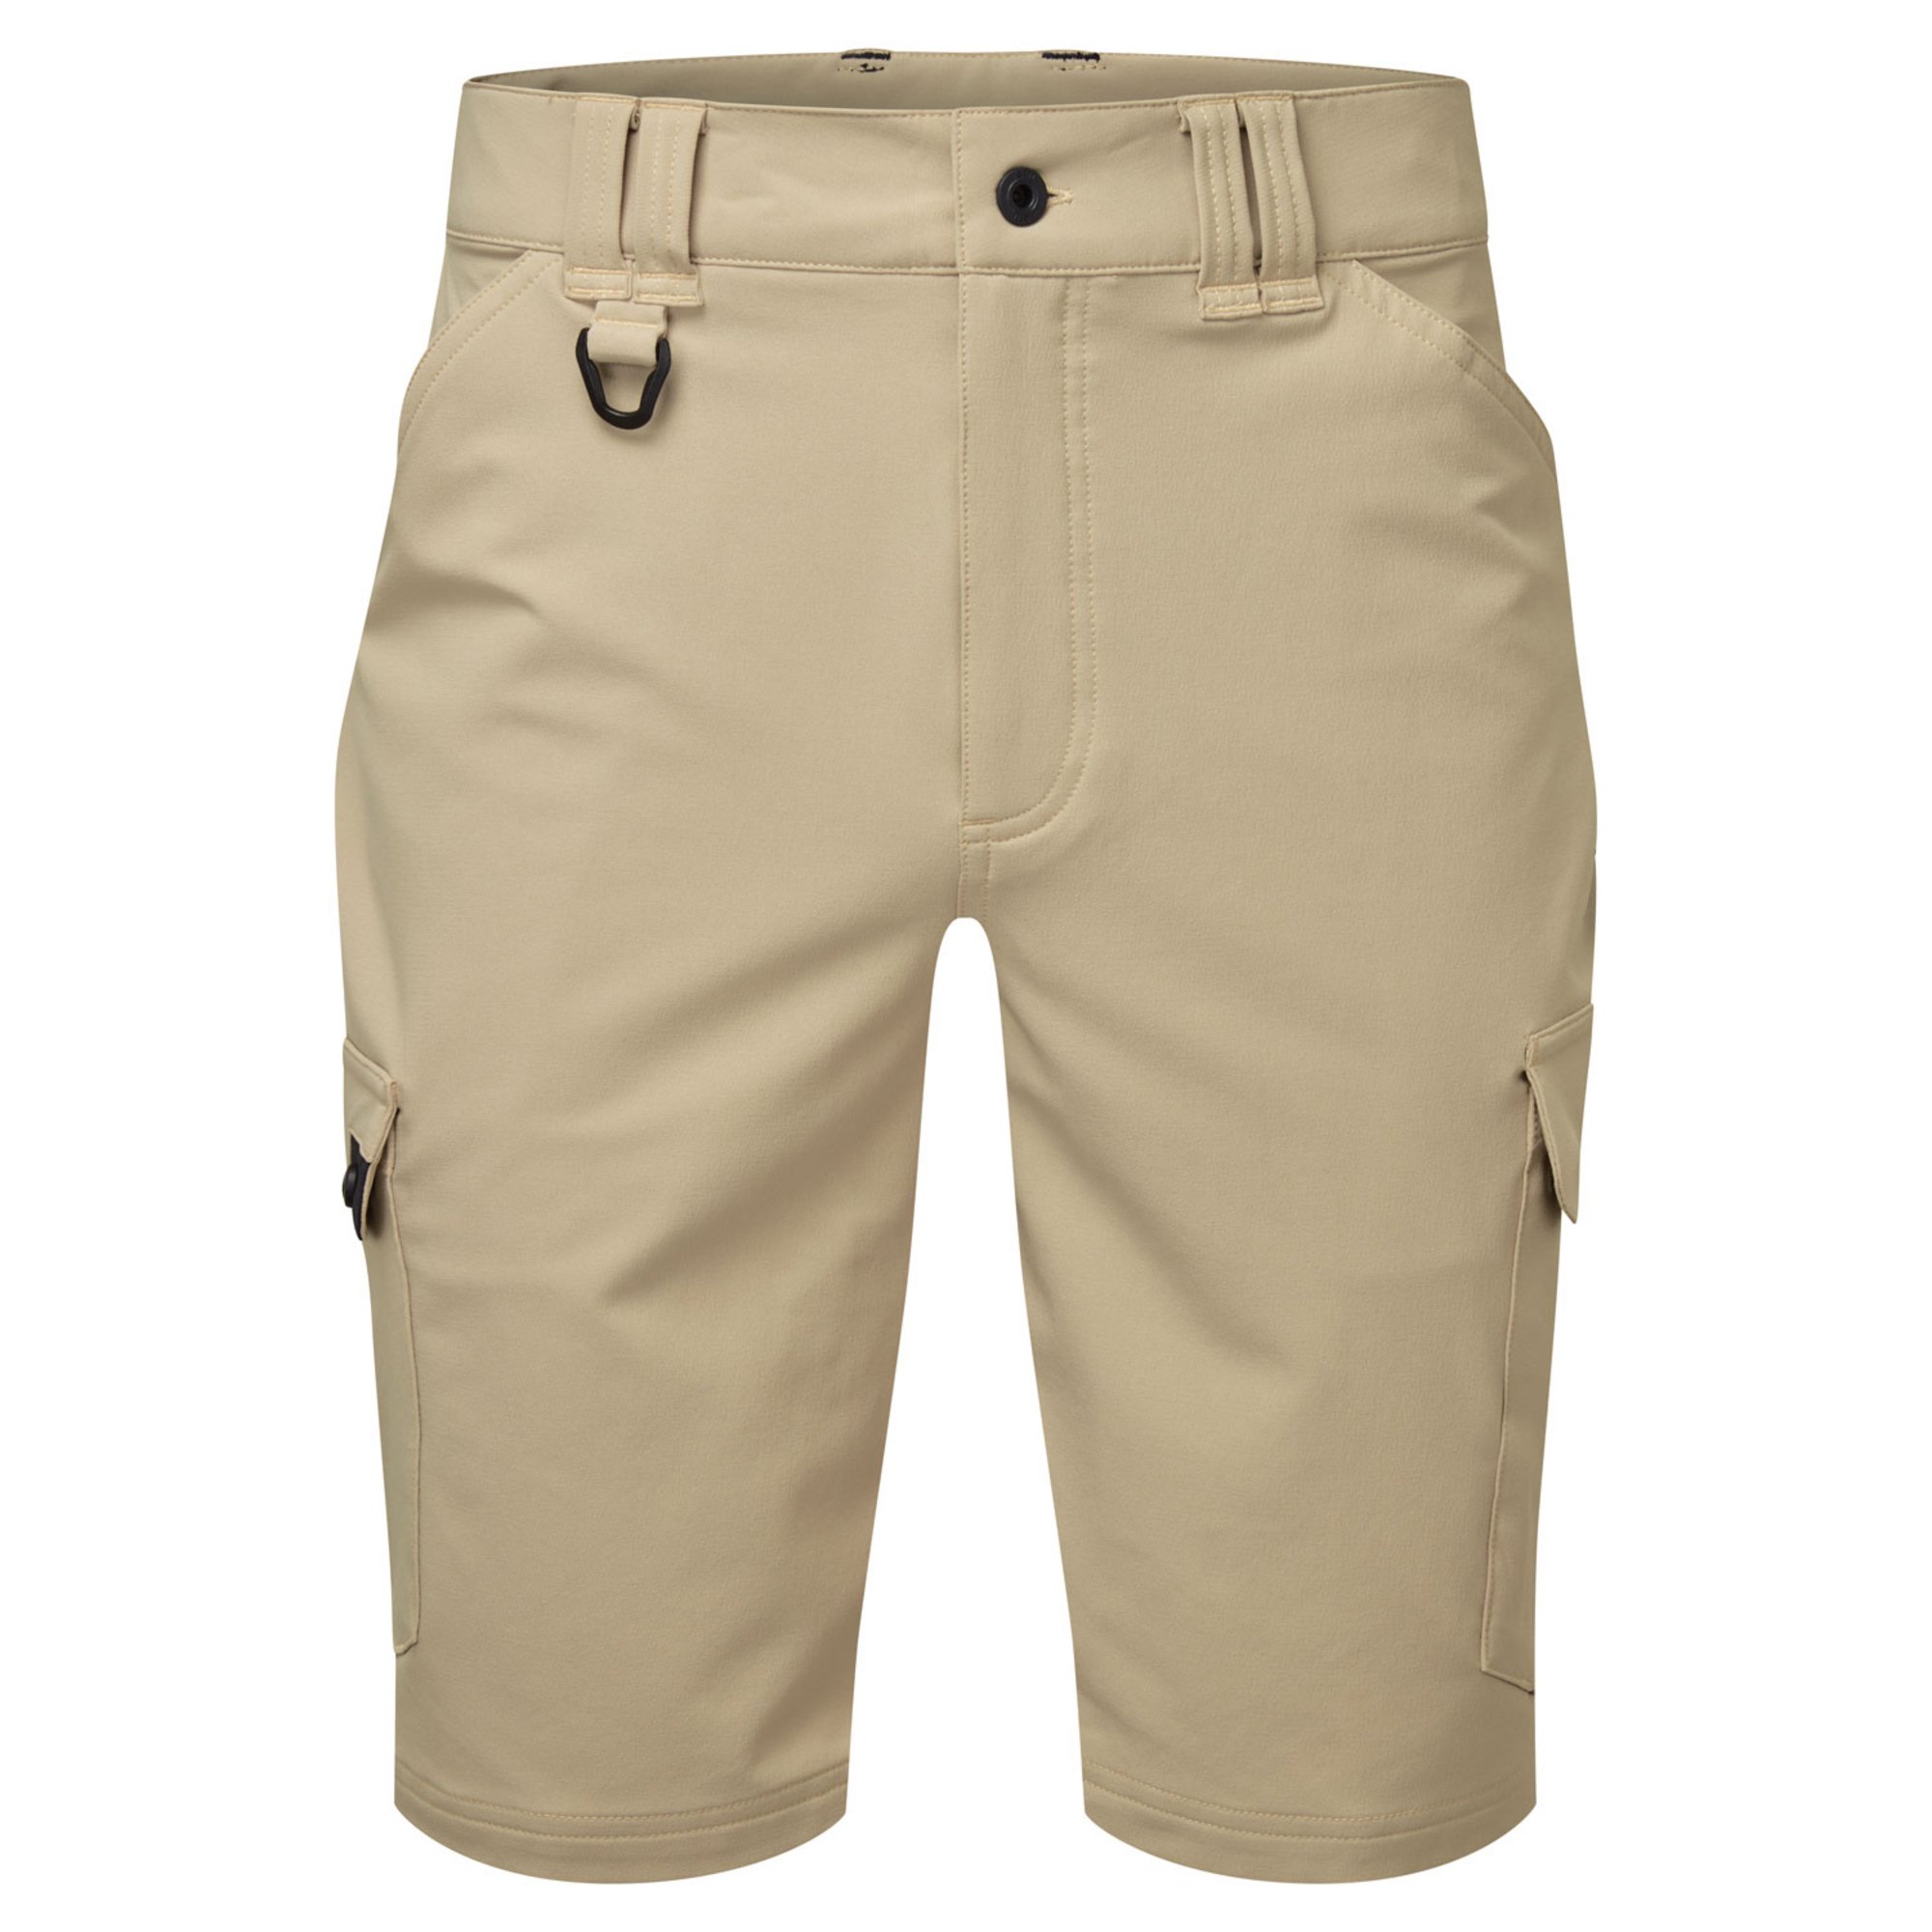 【NEW】GILLギル UV019 UV Tec Pro Shorts